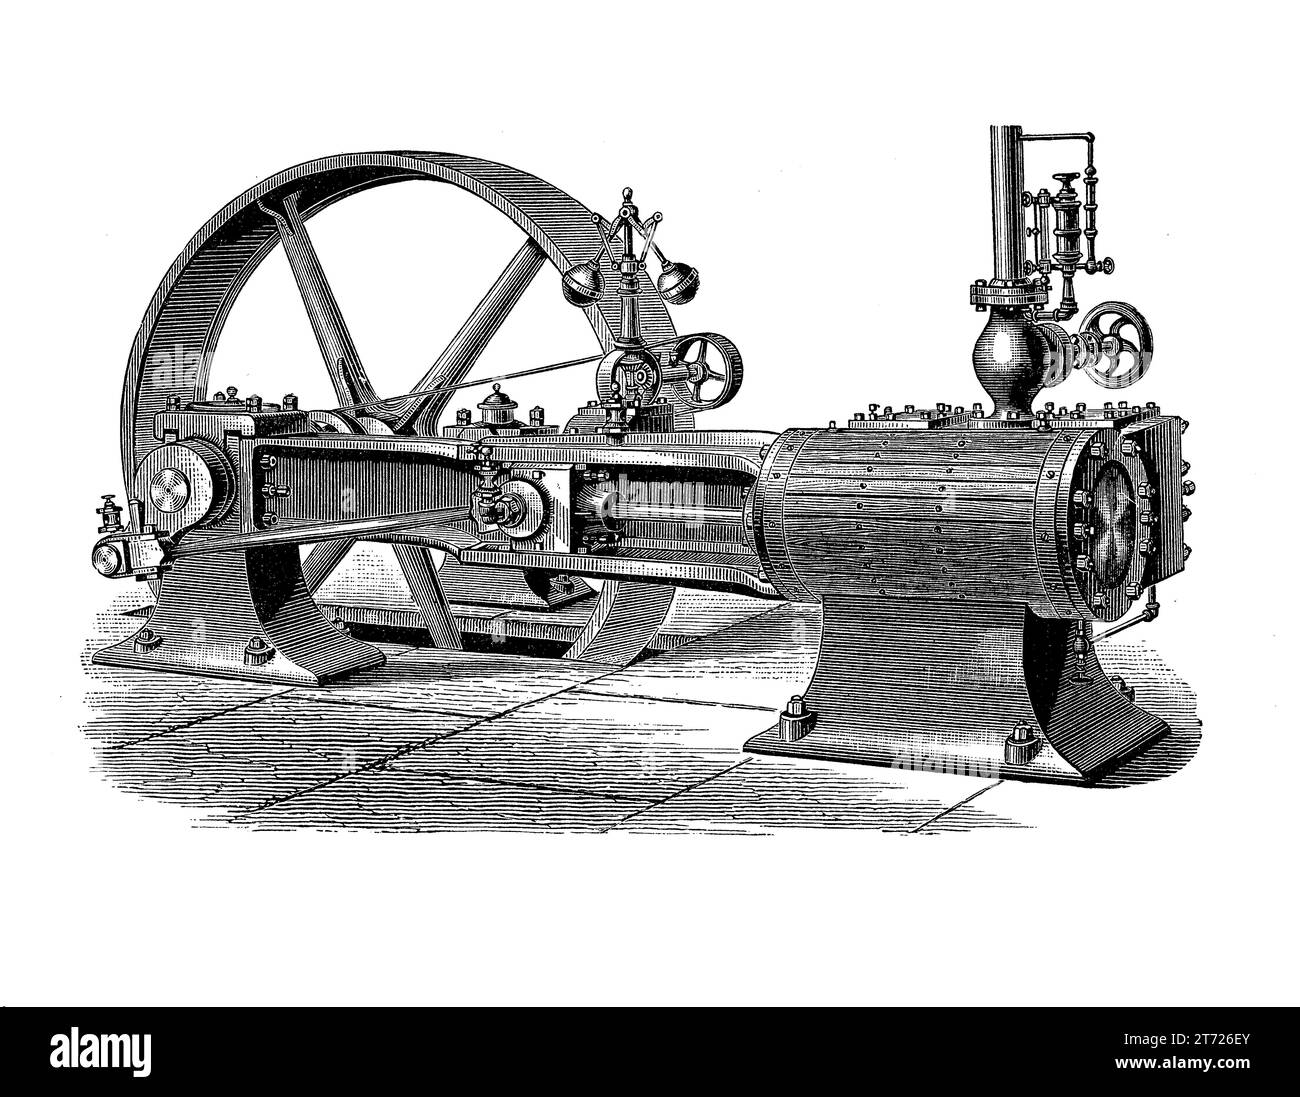 Machine à vapeur stationnaire pour alimenter les usines dans la transition de l'économie humaine vers des processus de fabrication plus efficaces et stables (18e-19e siècle) Banque D'Images